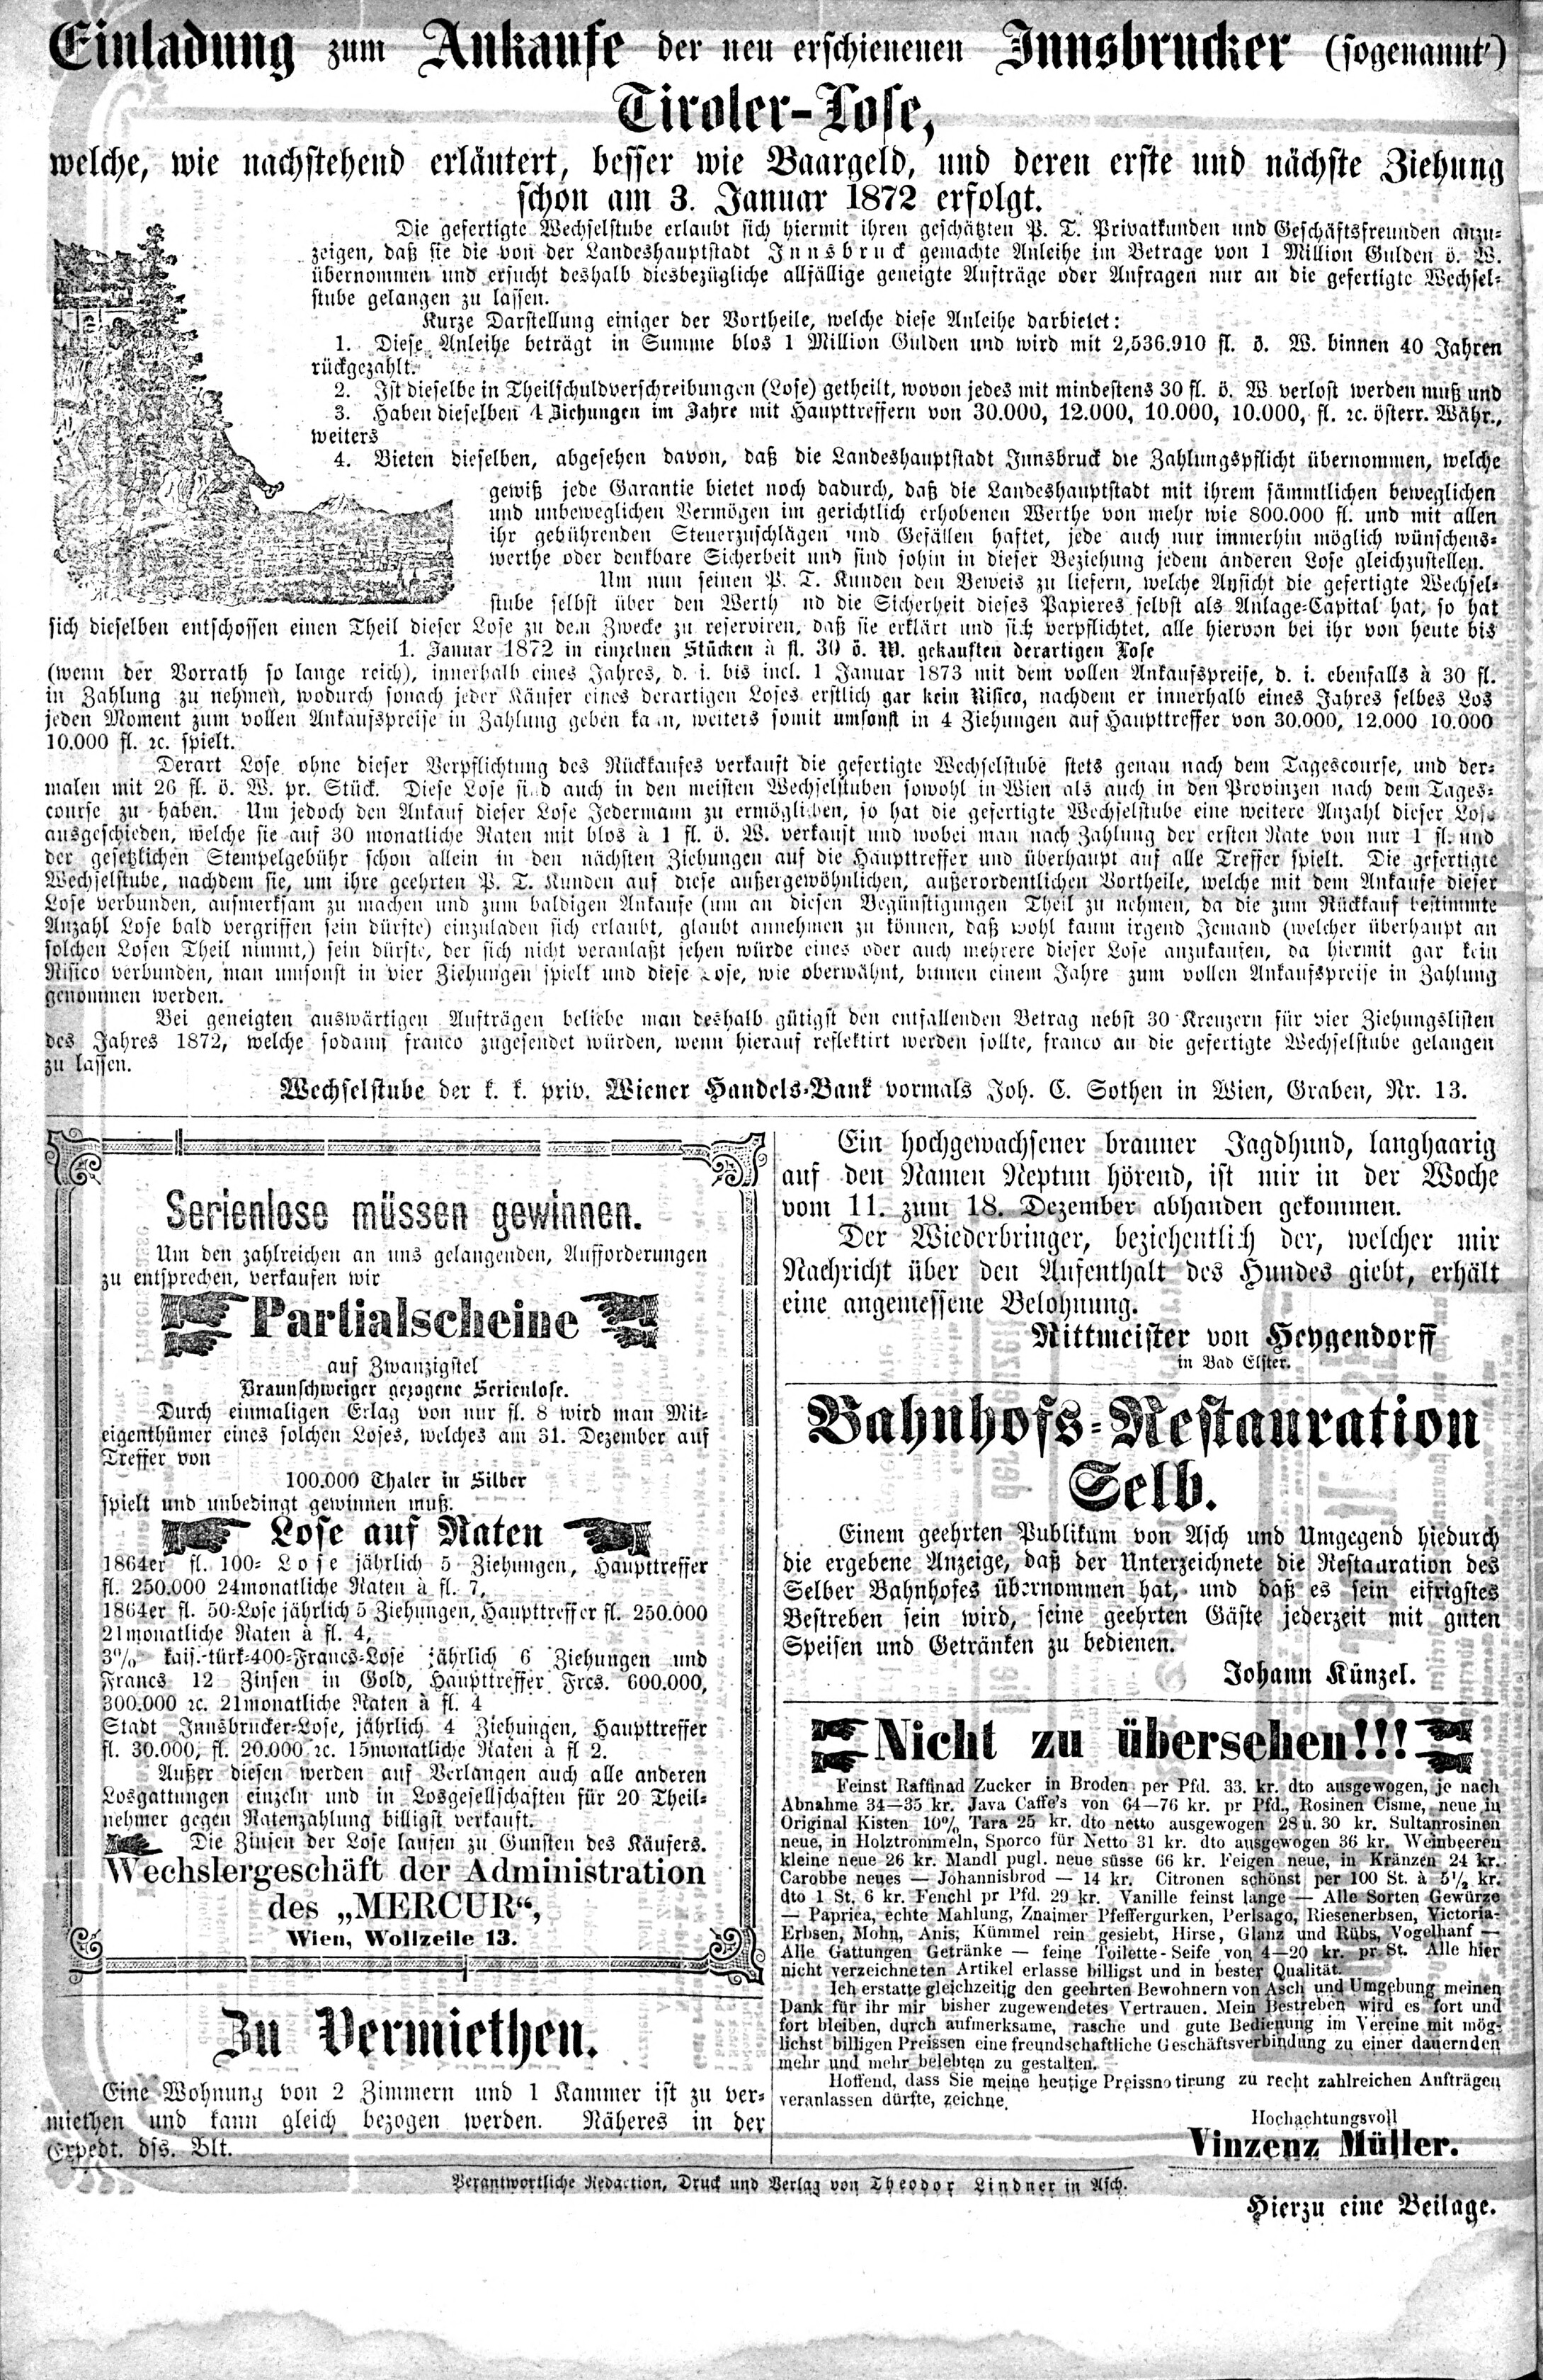 8. soap-ch_knihovna_ascher-zeitung-1871-12-23-n51_1140